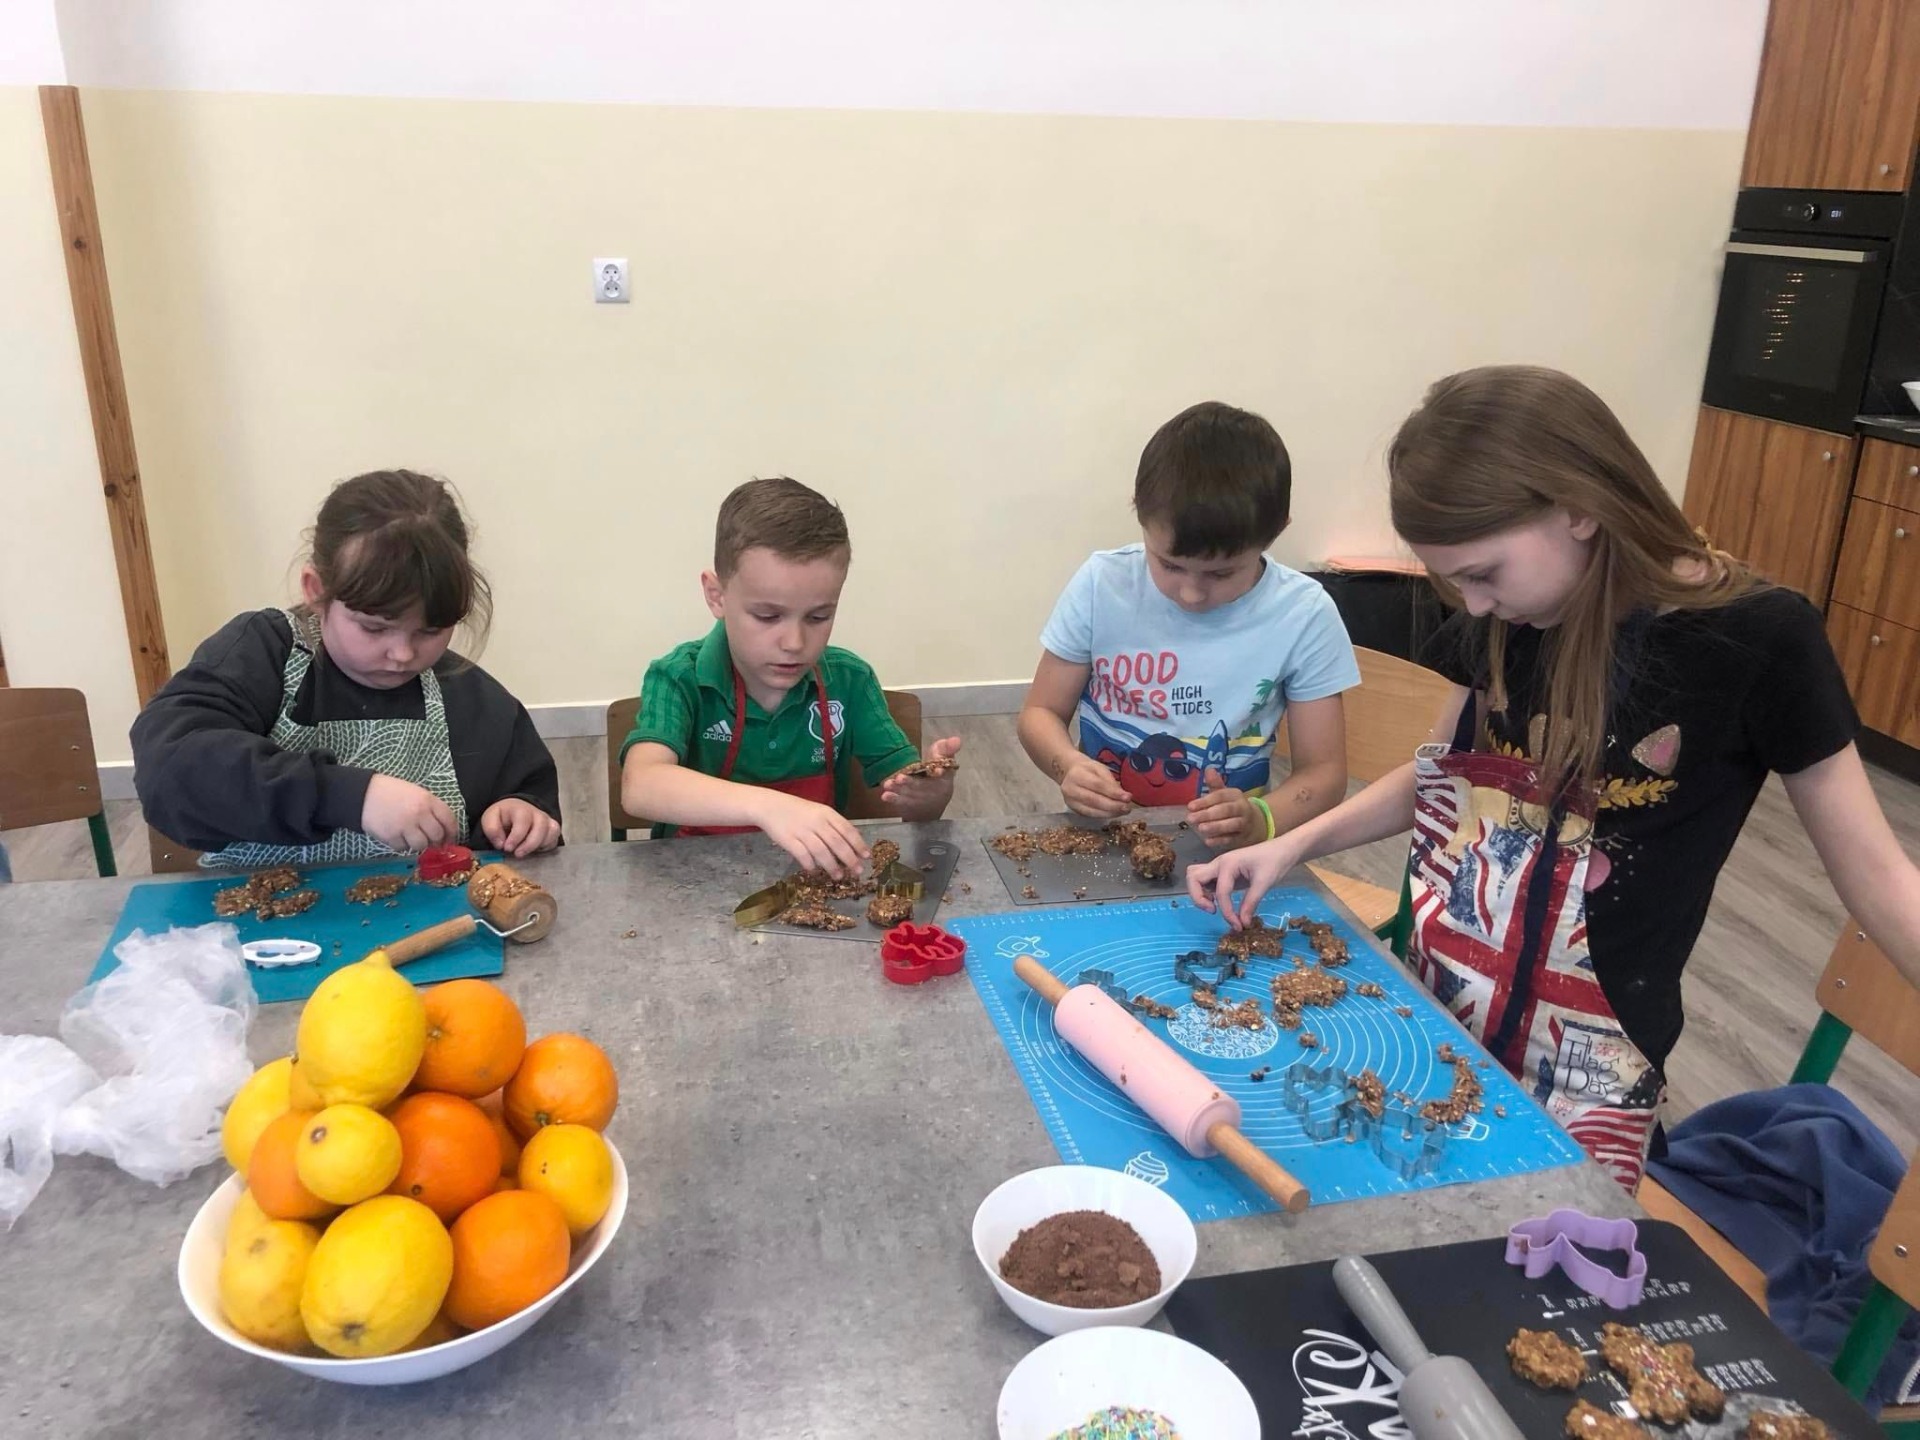 Na zdjęciu widzimy grupę dzieci siedzących przy długim stole w jasnym pomieszczeniu. Dzieci są zaangażowane w tworzenie rękodzieła lub dekoracji.